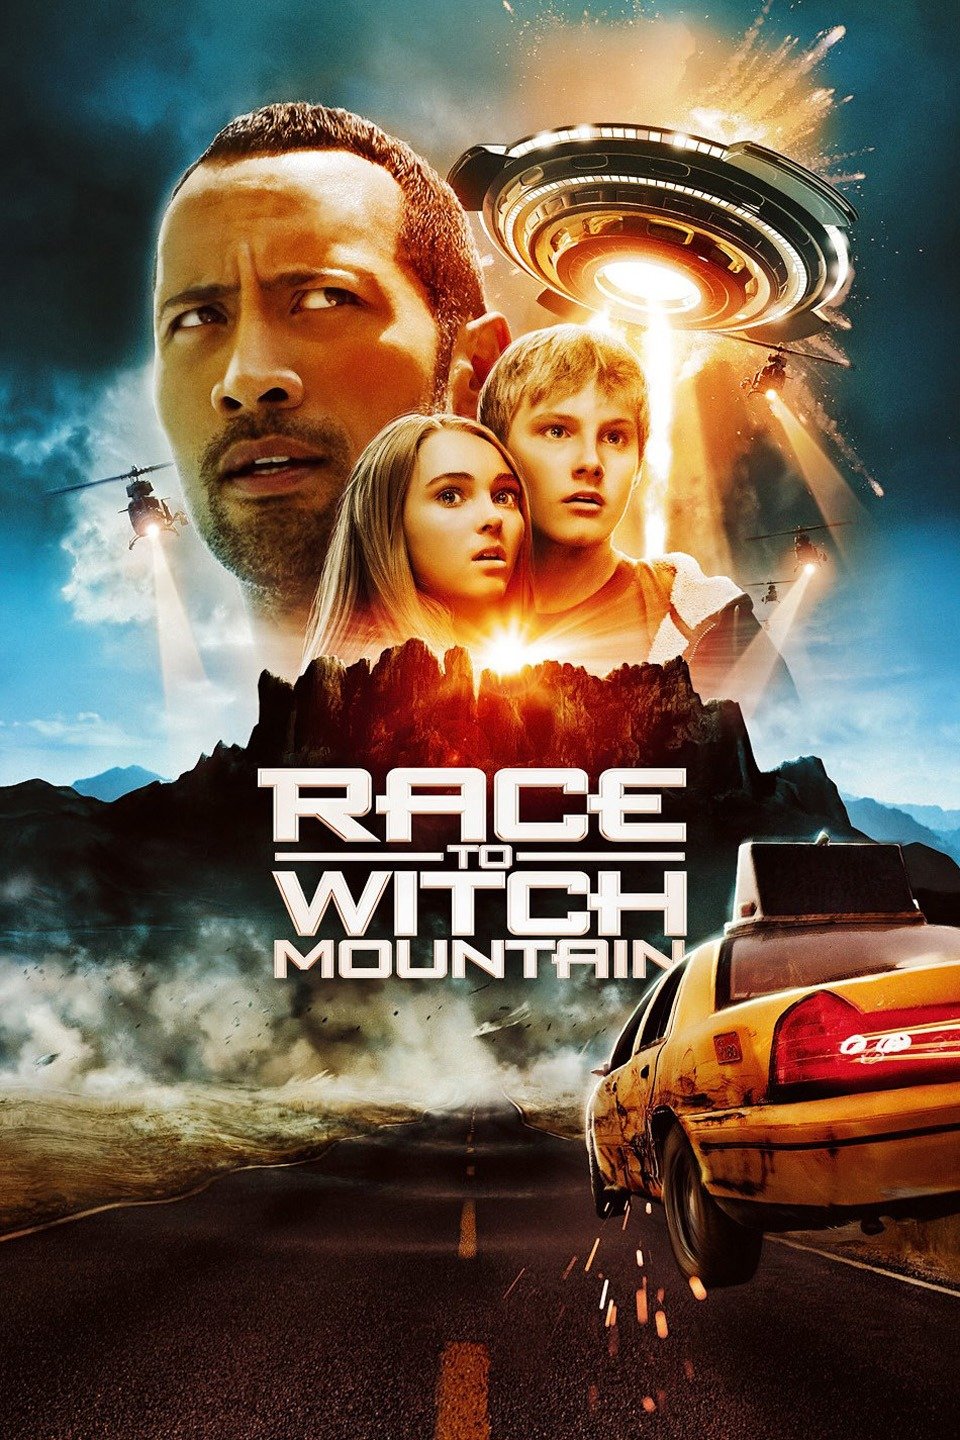 [MINI-HD] Race to Witch Mountain (2009) ผจญภัยฝ่าหุบเขามรณะ [1080p] [พากย์ไทย 5.1 + เสียงอังกฤษ DTS] [บรรยายไทย + อังกฤษ] [เสียงไทย + ซับไทย] [OPENLOAD]